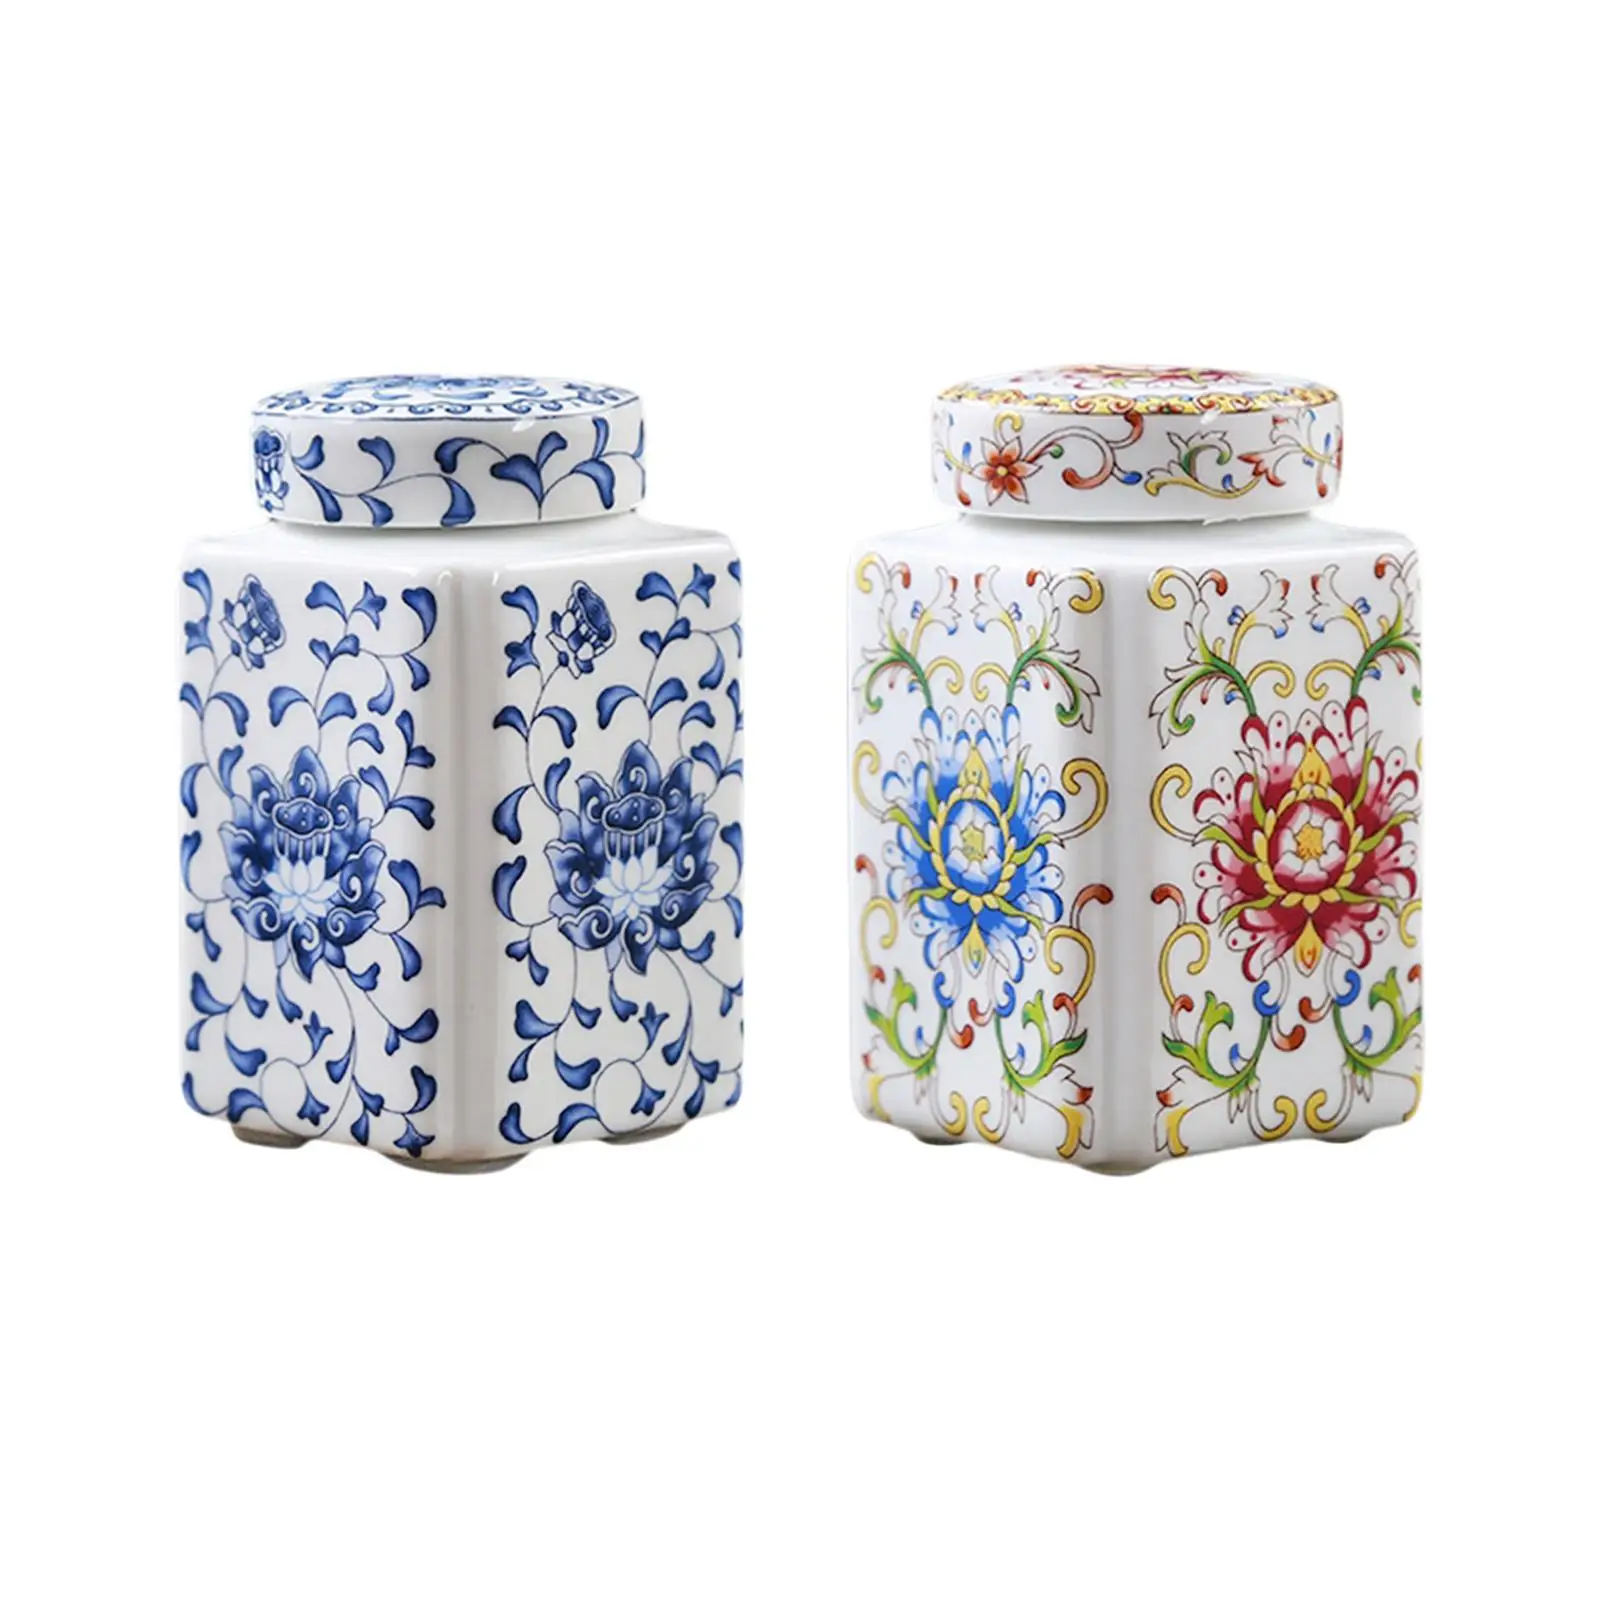 Porcelain Temple Jar Flower Vase Flower Display Organizer Tea Canister Ceramic Ginger Jar for Home Office Table Party Decor